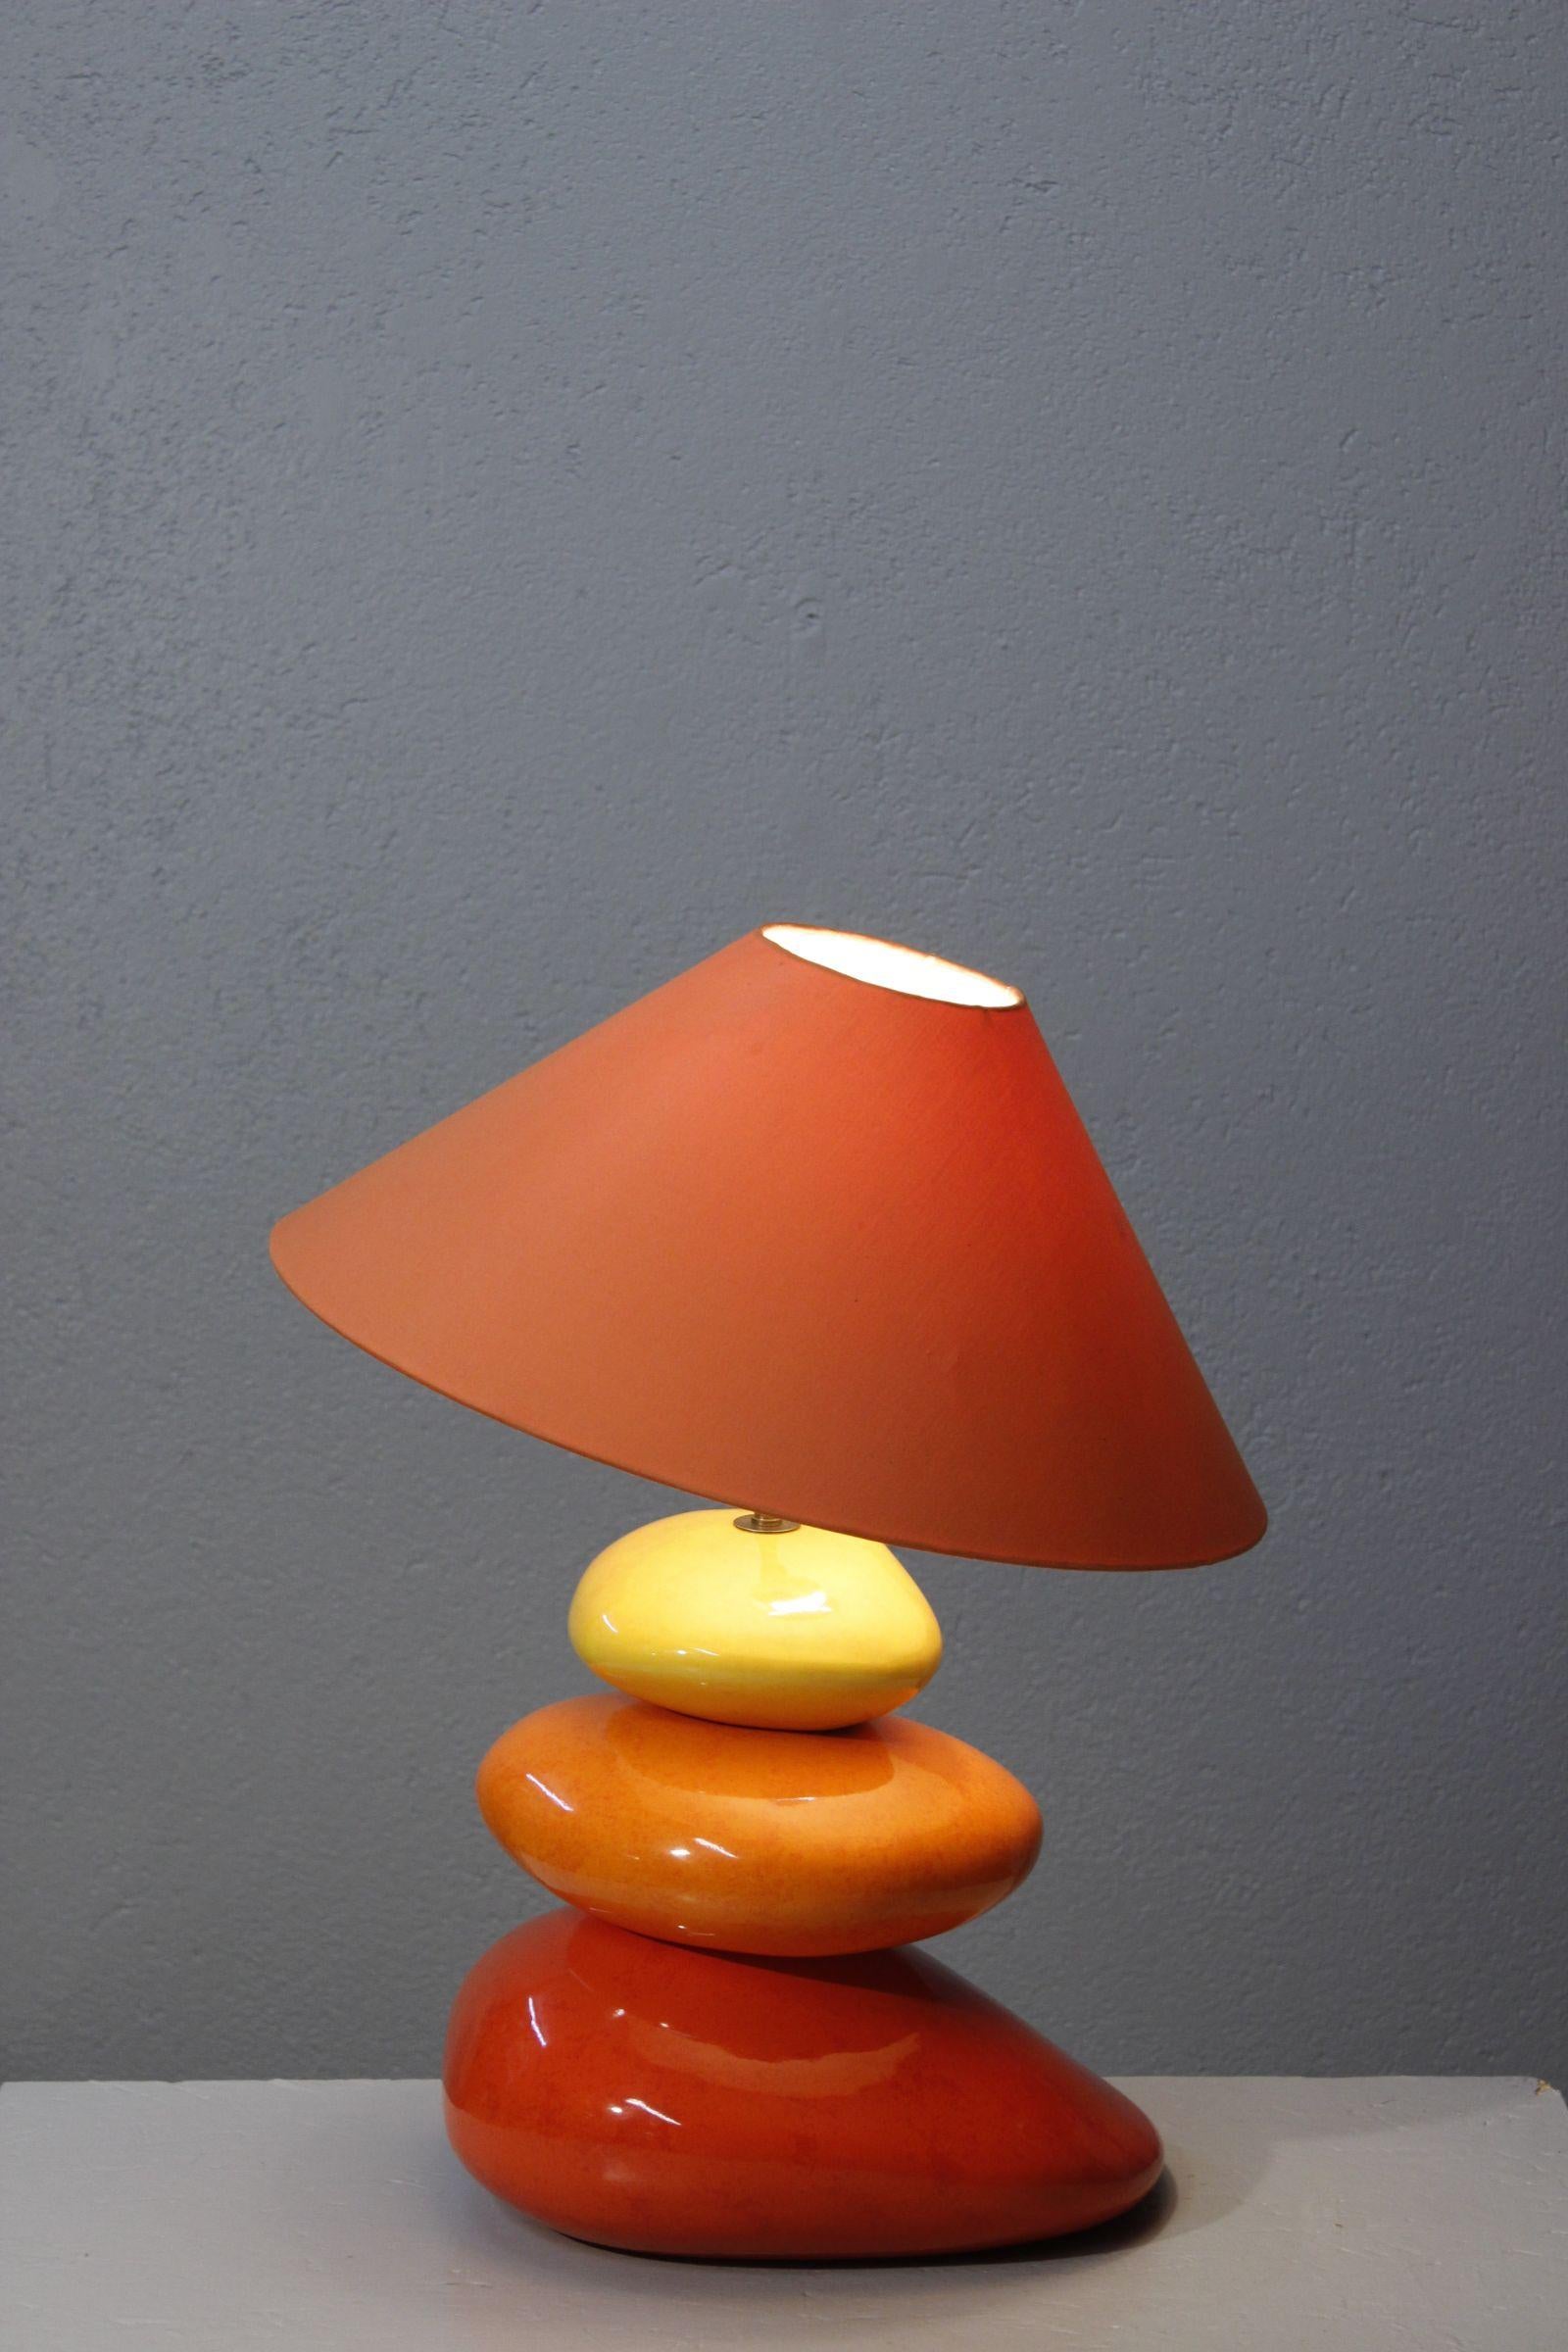 Große Kieselsteinlampe von François Chatain, Frankreich um 1990. 

Bestehend aus drei glasierten Keramikkieseln, die abwechselnd rot, orange und gelb sind, überragt von einem Messingstab, der die Fassung auf einem Messingzapfen trägt, der die